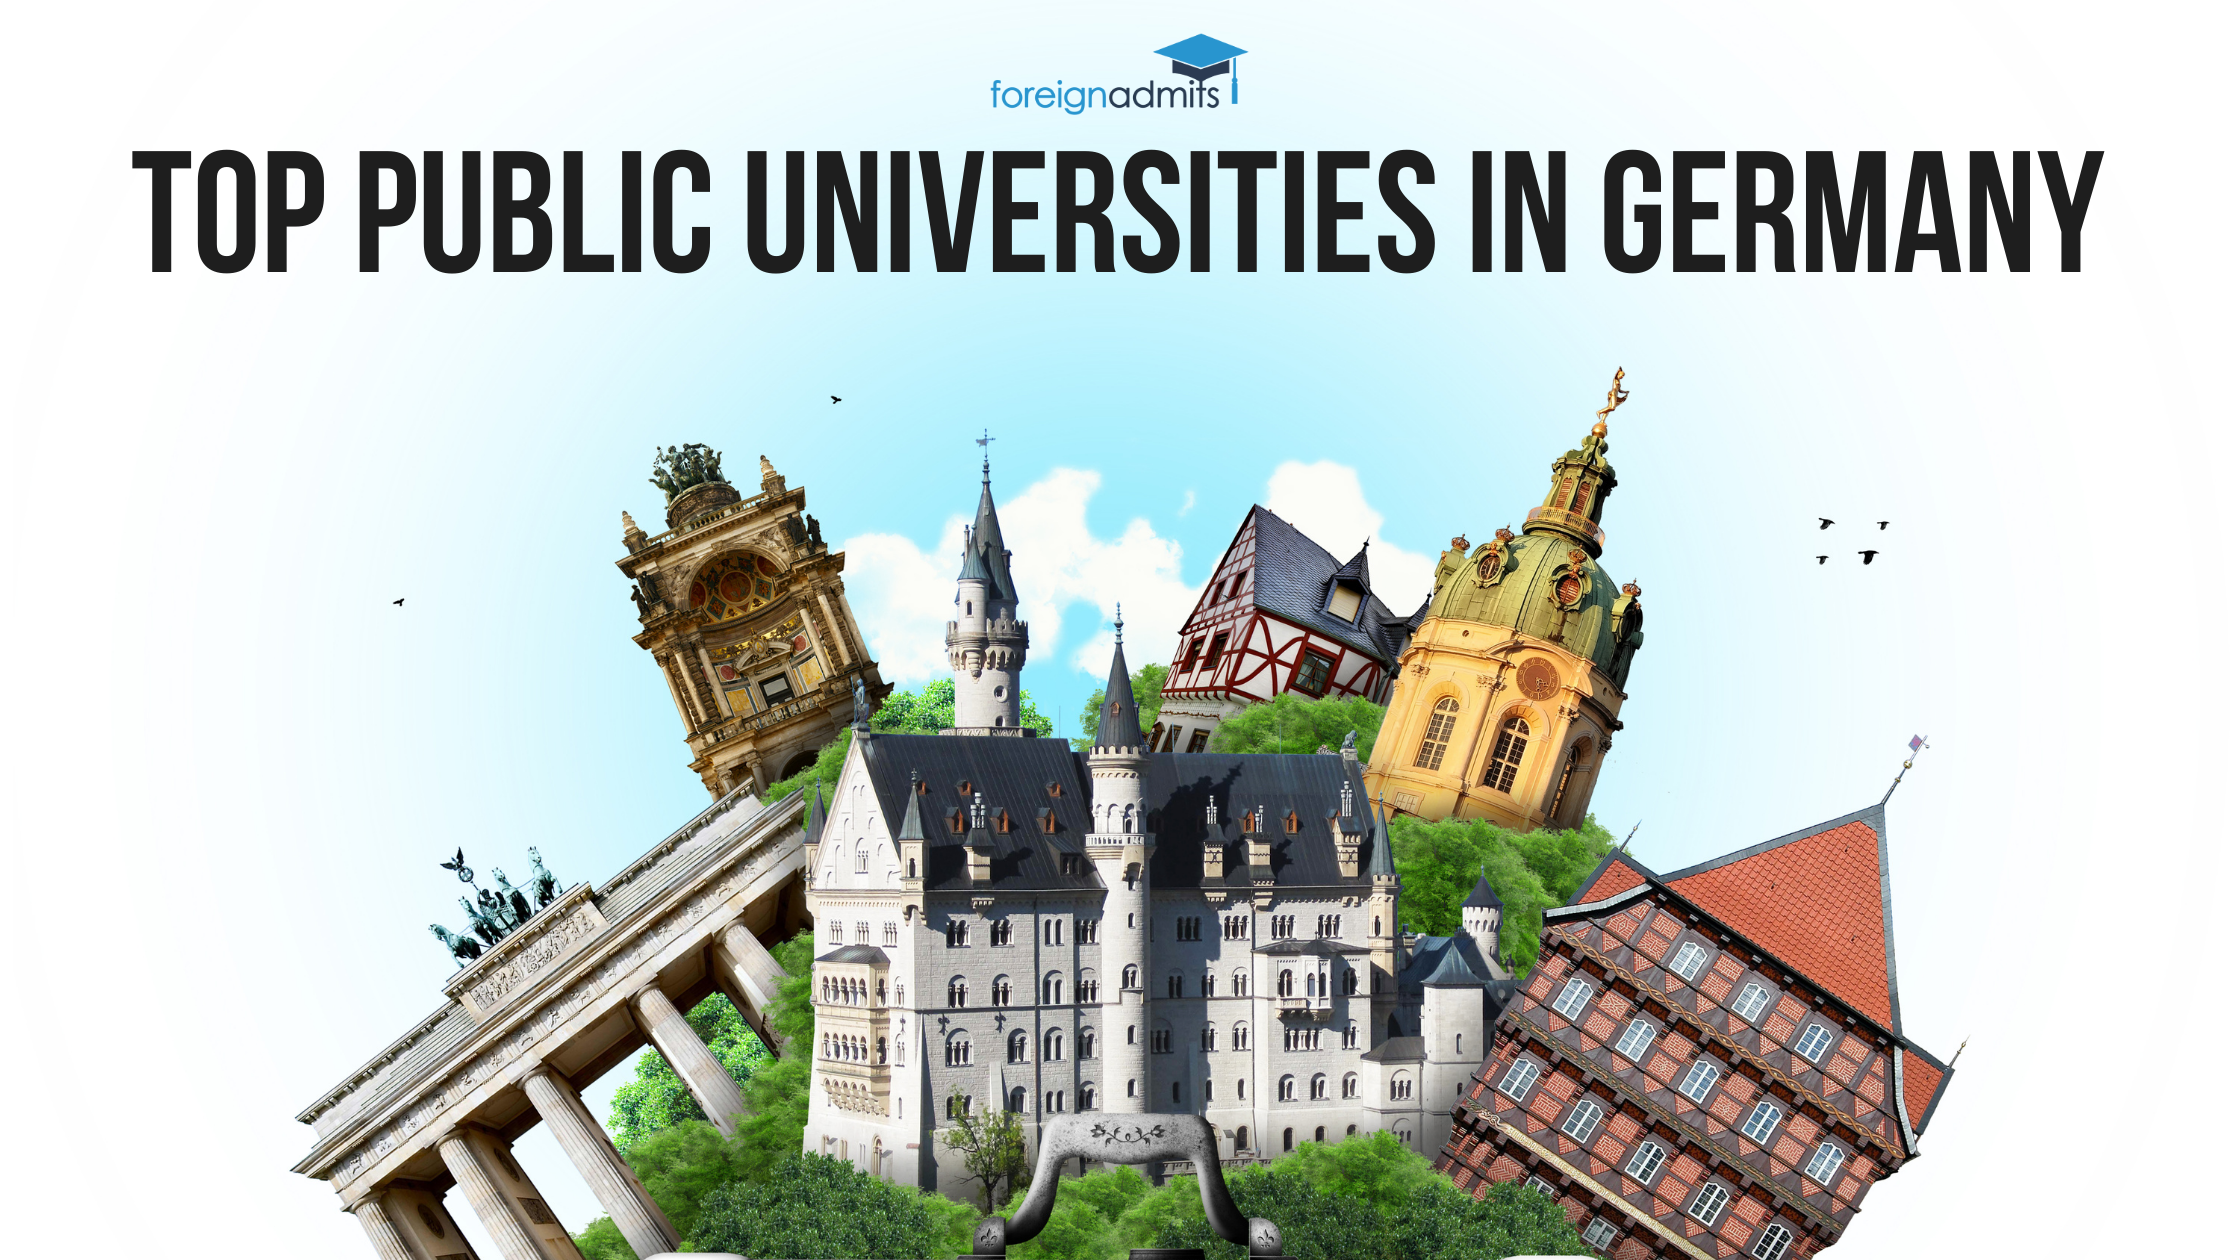 Top public universities in Germany